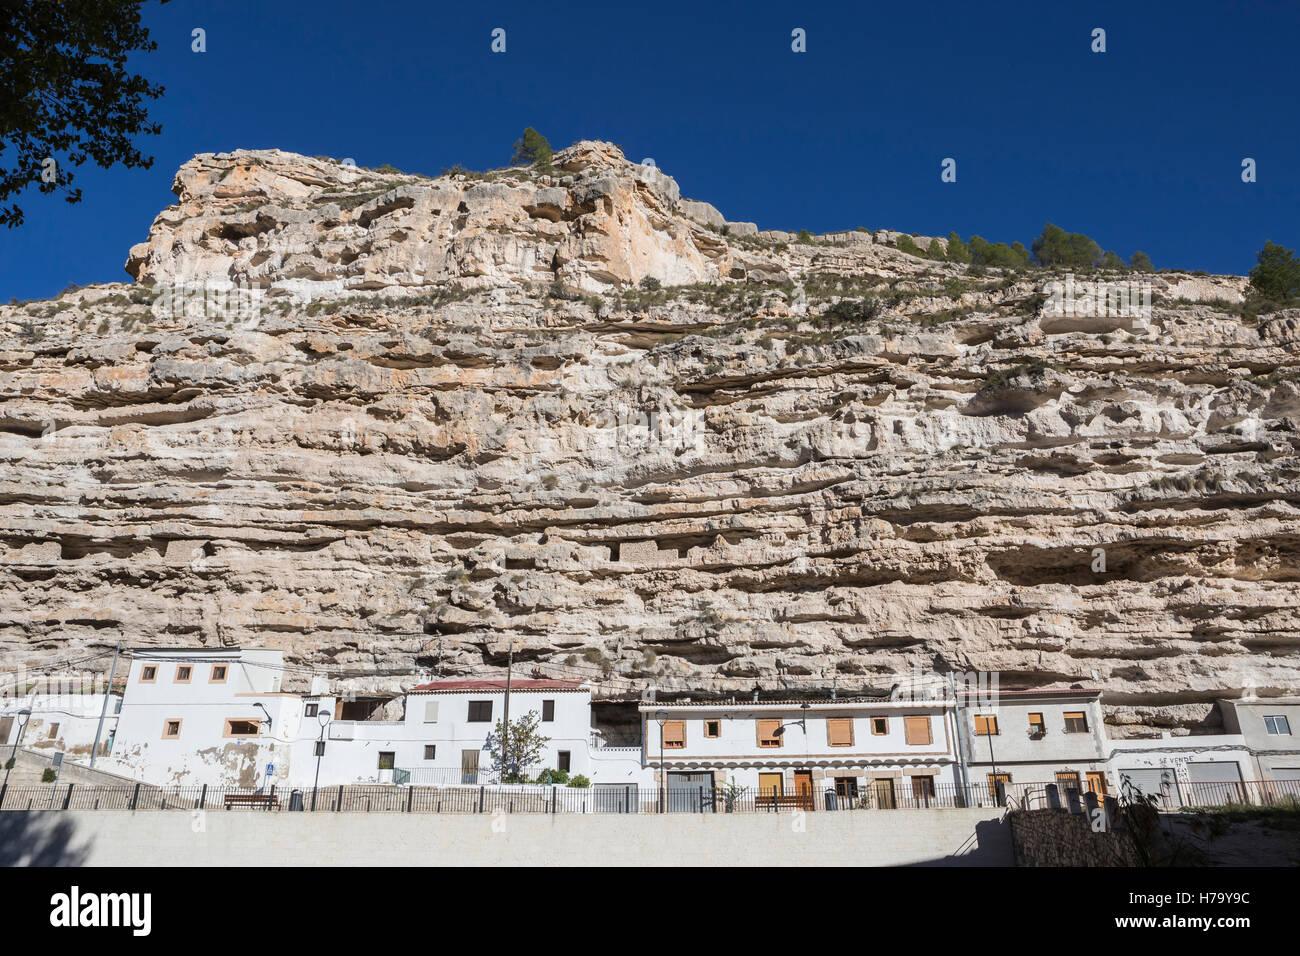 Casa Cueva en las montañas de piedra caliza, junto a las orillas del río Júcar, Alcalá del Júcar, España Foto de stock